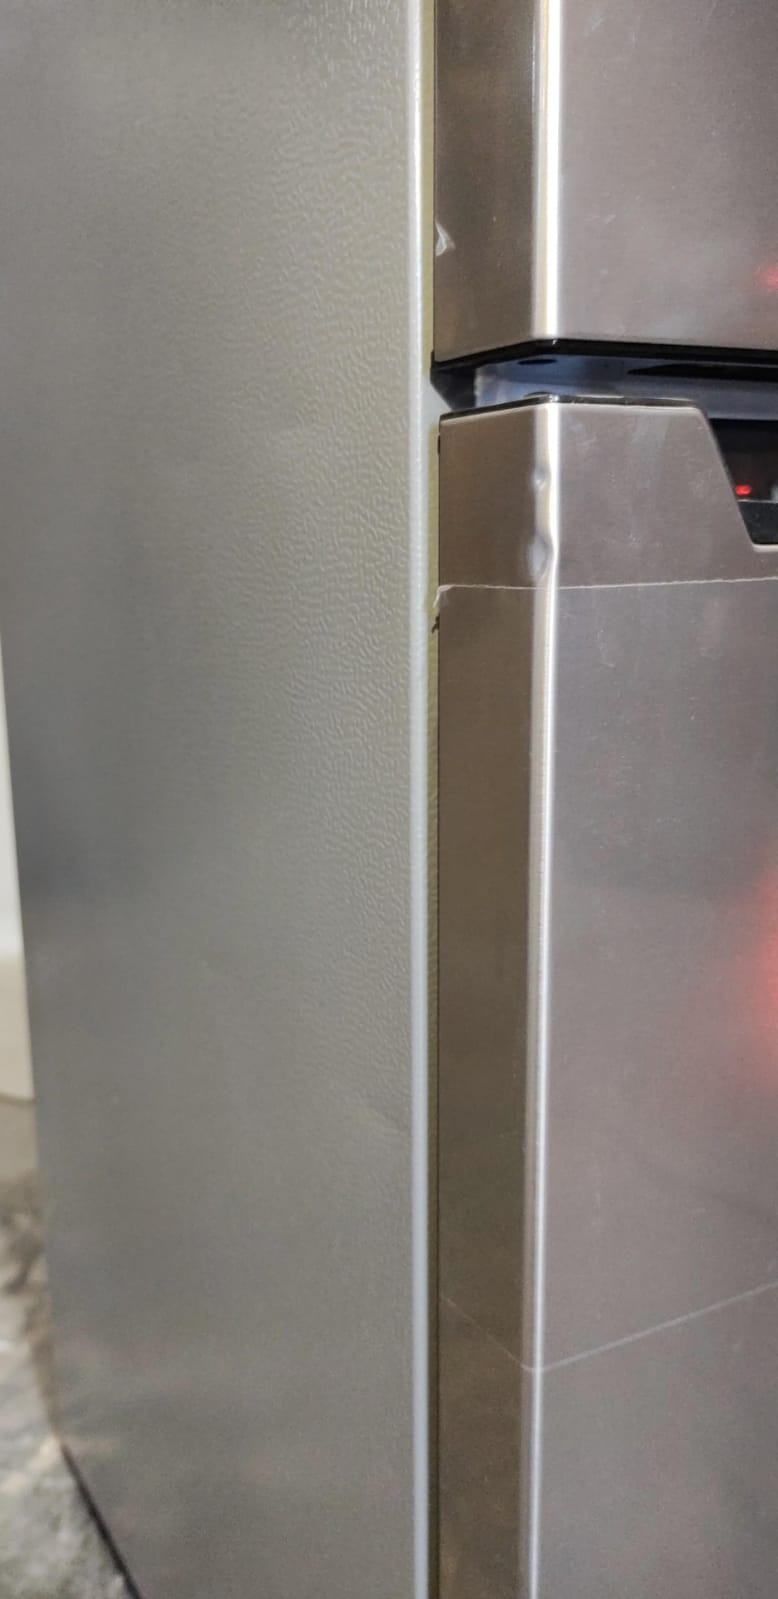 Refrigerador libero bottom freezer frío directo 157 litros lrb-180dfi